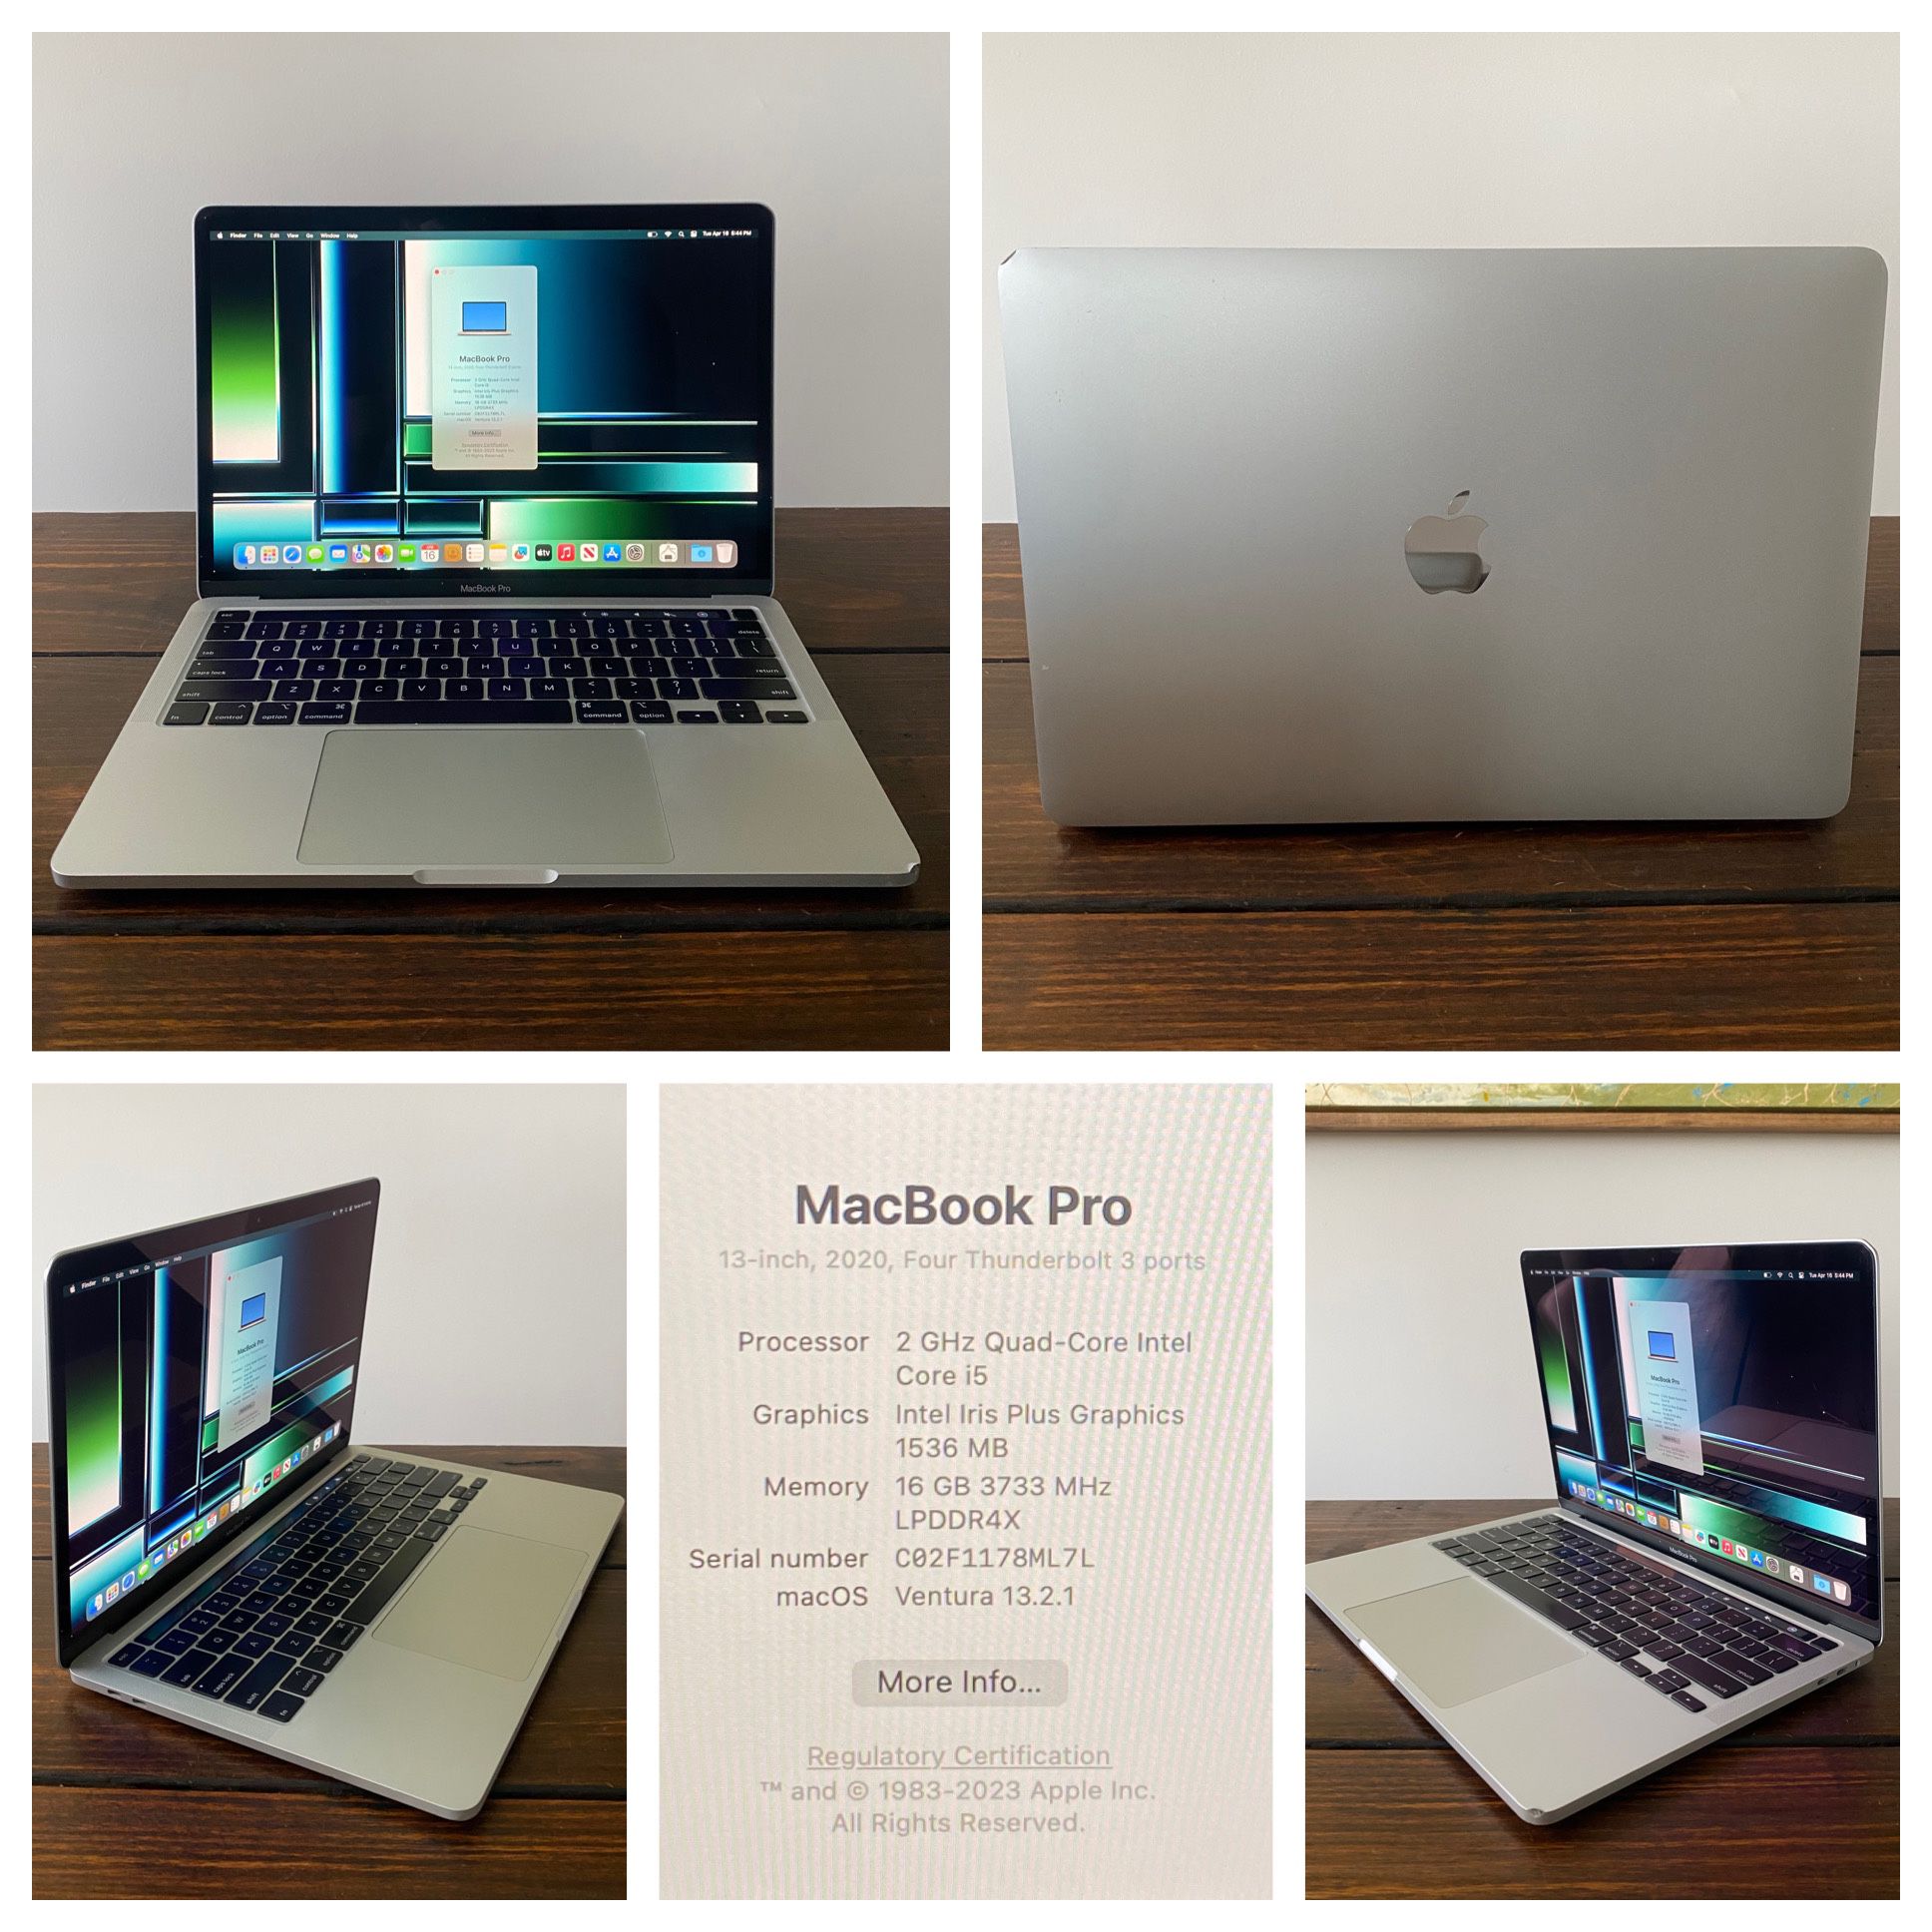 16gb, 500gb 2020 13" MacBook Pro Quad-Core, Office 2019, Logic, Final Cut